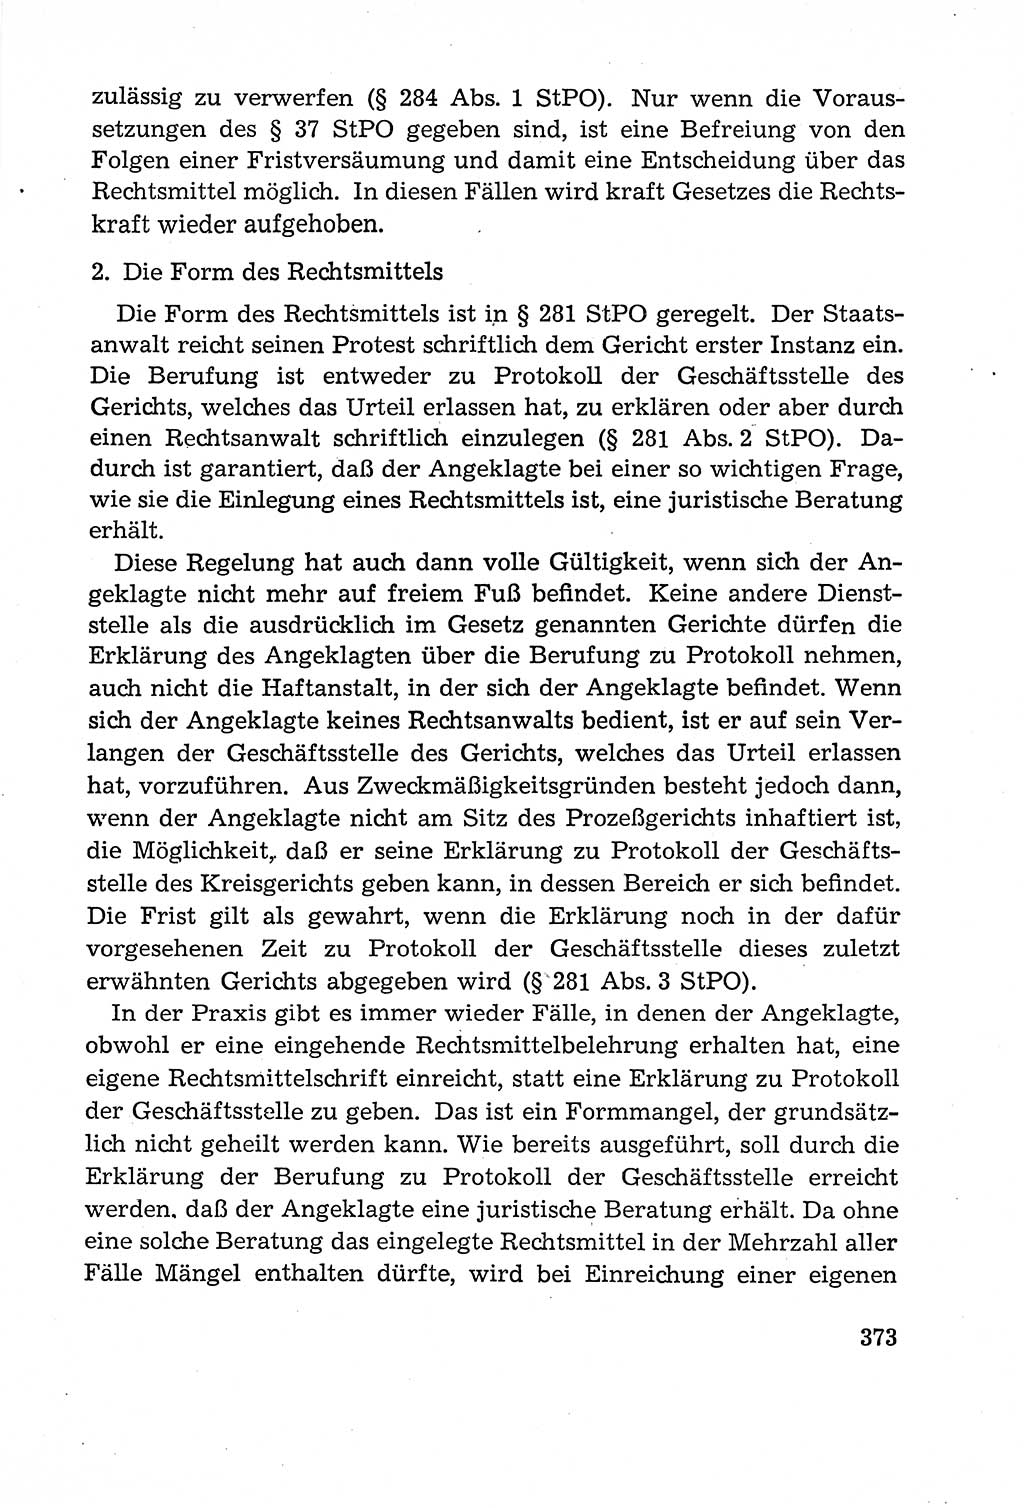 Leitfaden des Strafprozeßrechts der Deutschen Demokratischen Republik (DDR) 1959, Seite 373 (LF StPR DDR 1959, S. 373)